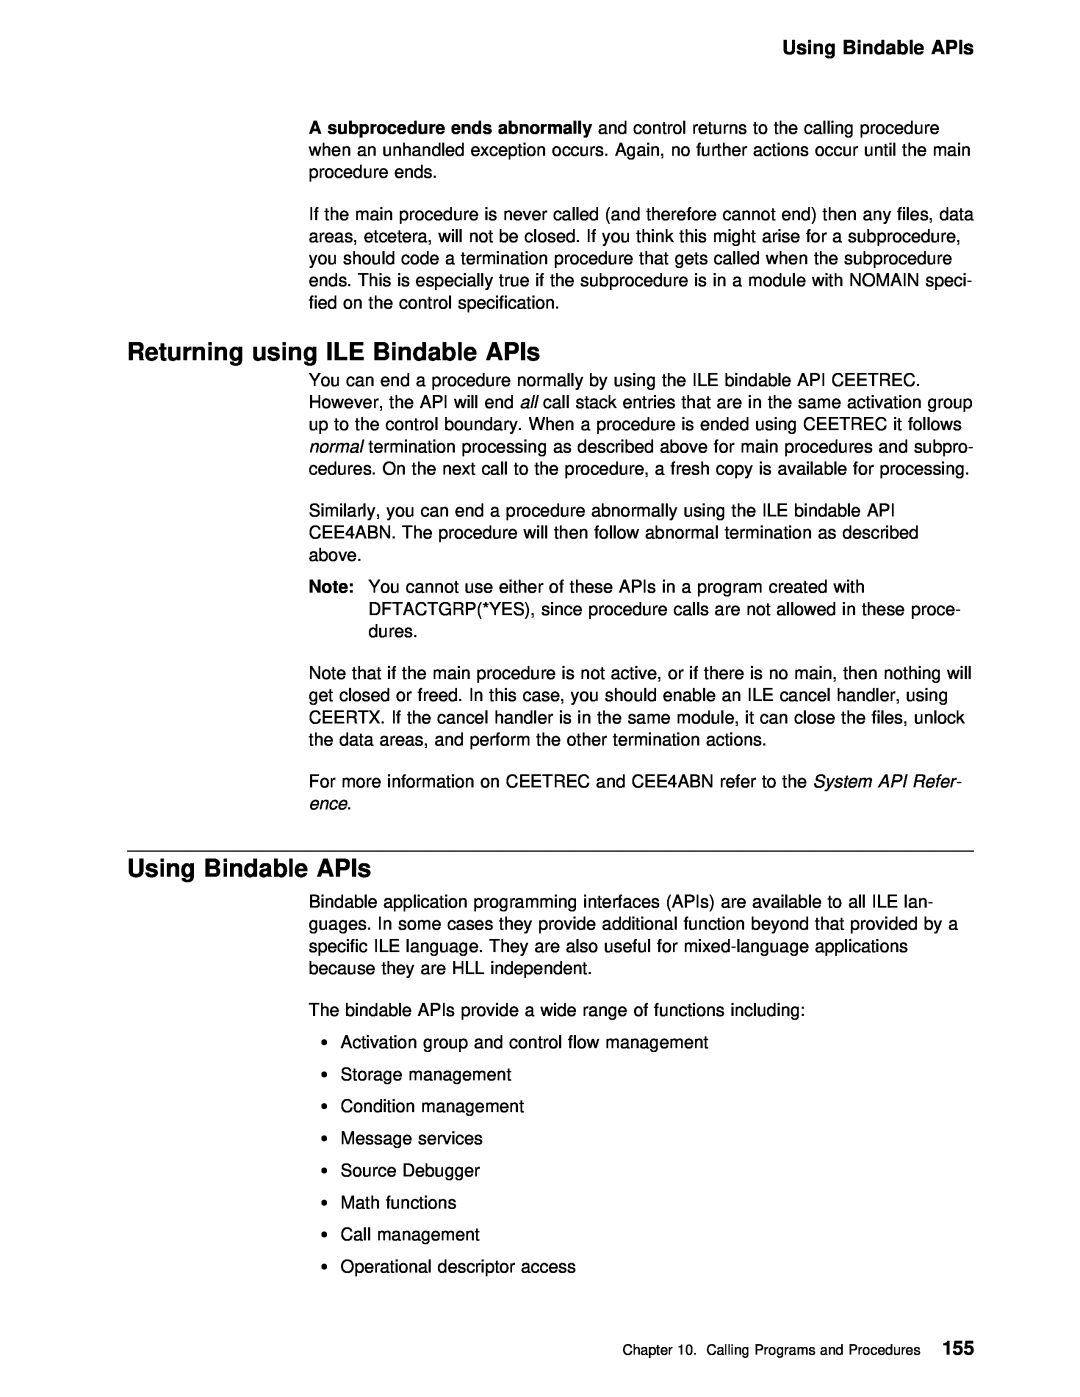 IBM AS/400 manual Using Bindable APIs, Returning using ILE Bindable 